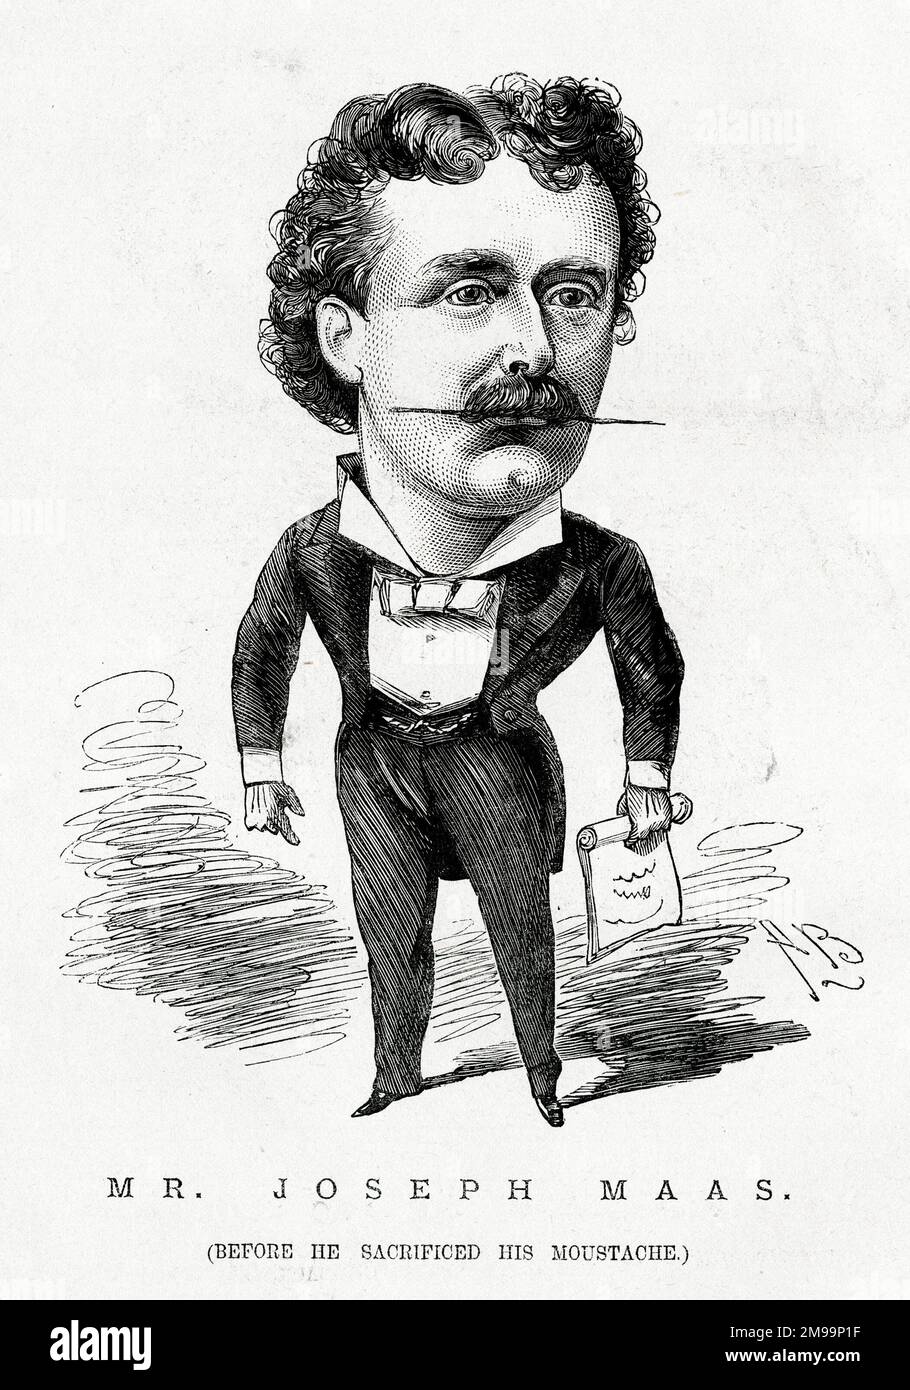 Caricature, M. Joseph Maas (1847-1886), chanteur anglais ténor, avant de sacrifier sa moustache. Il était le ténor principal de la Carl Rosa Opera Company. Banque D'Images